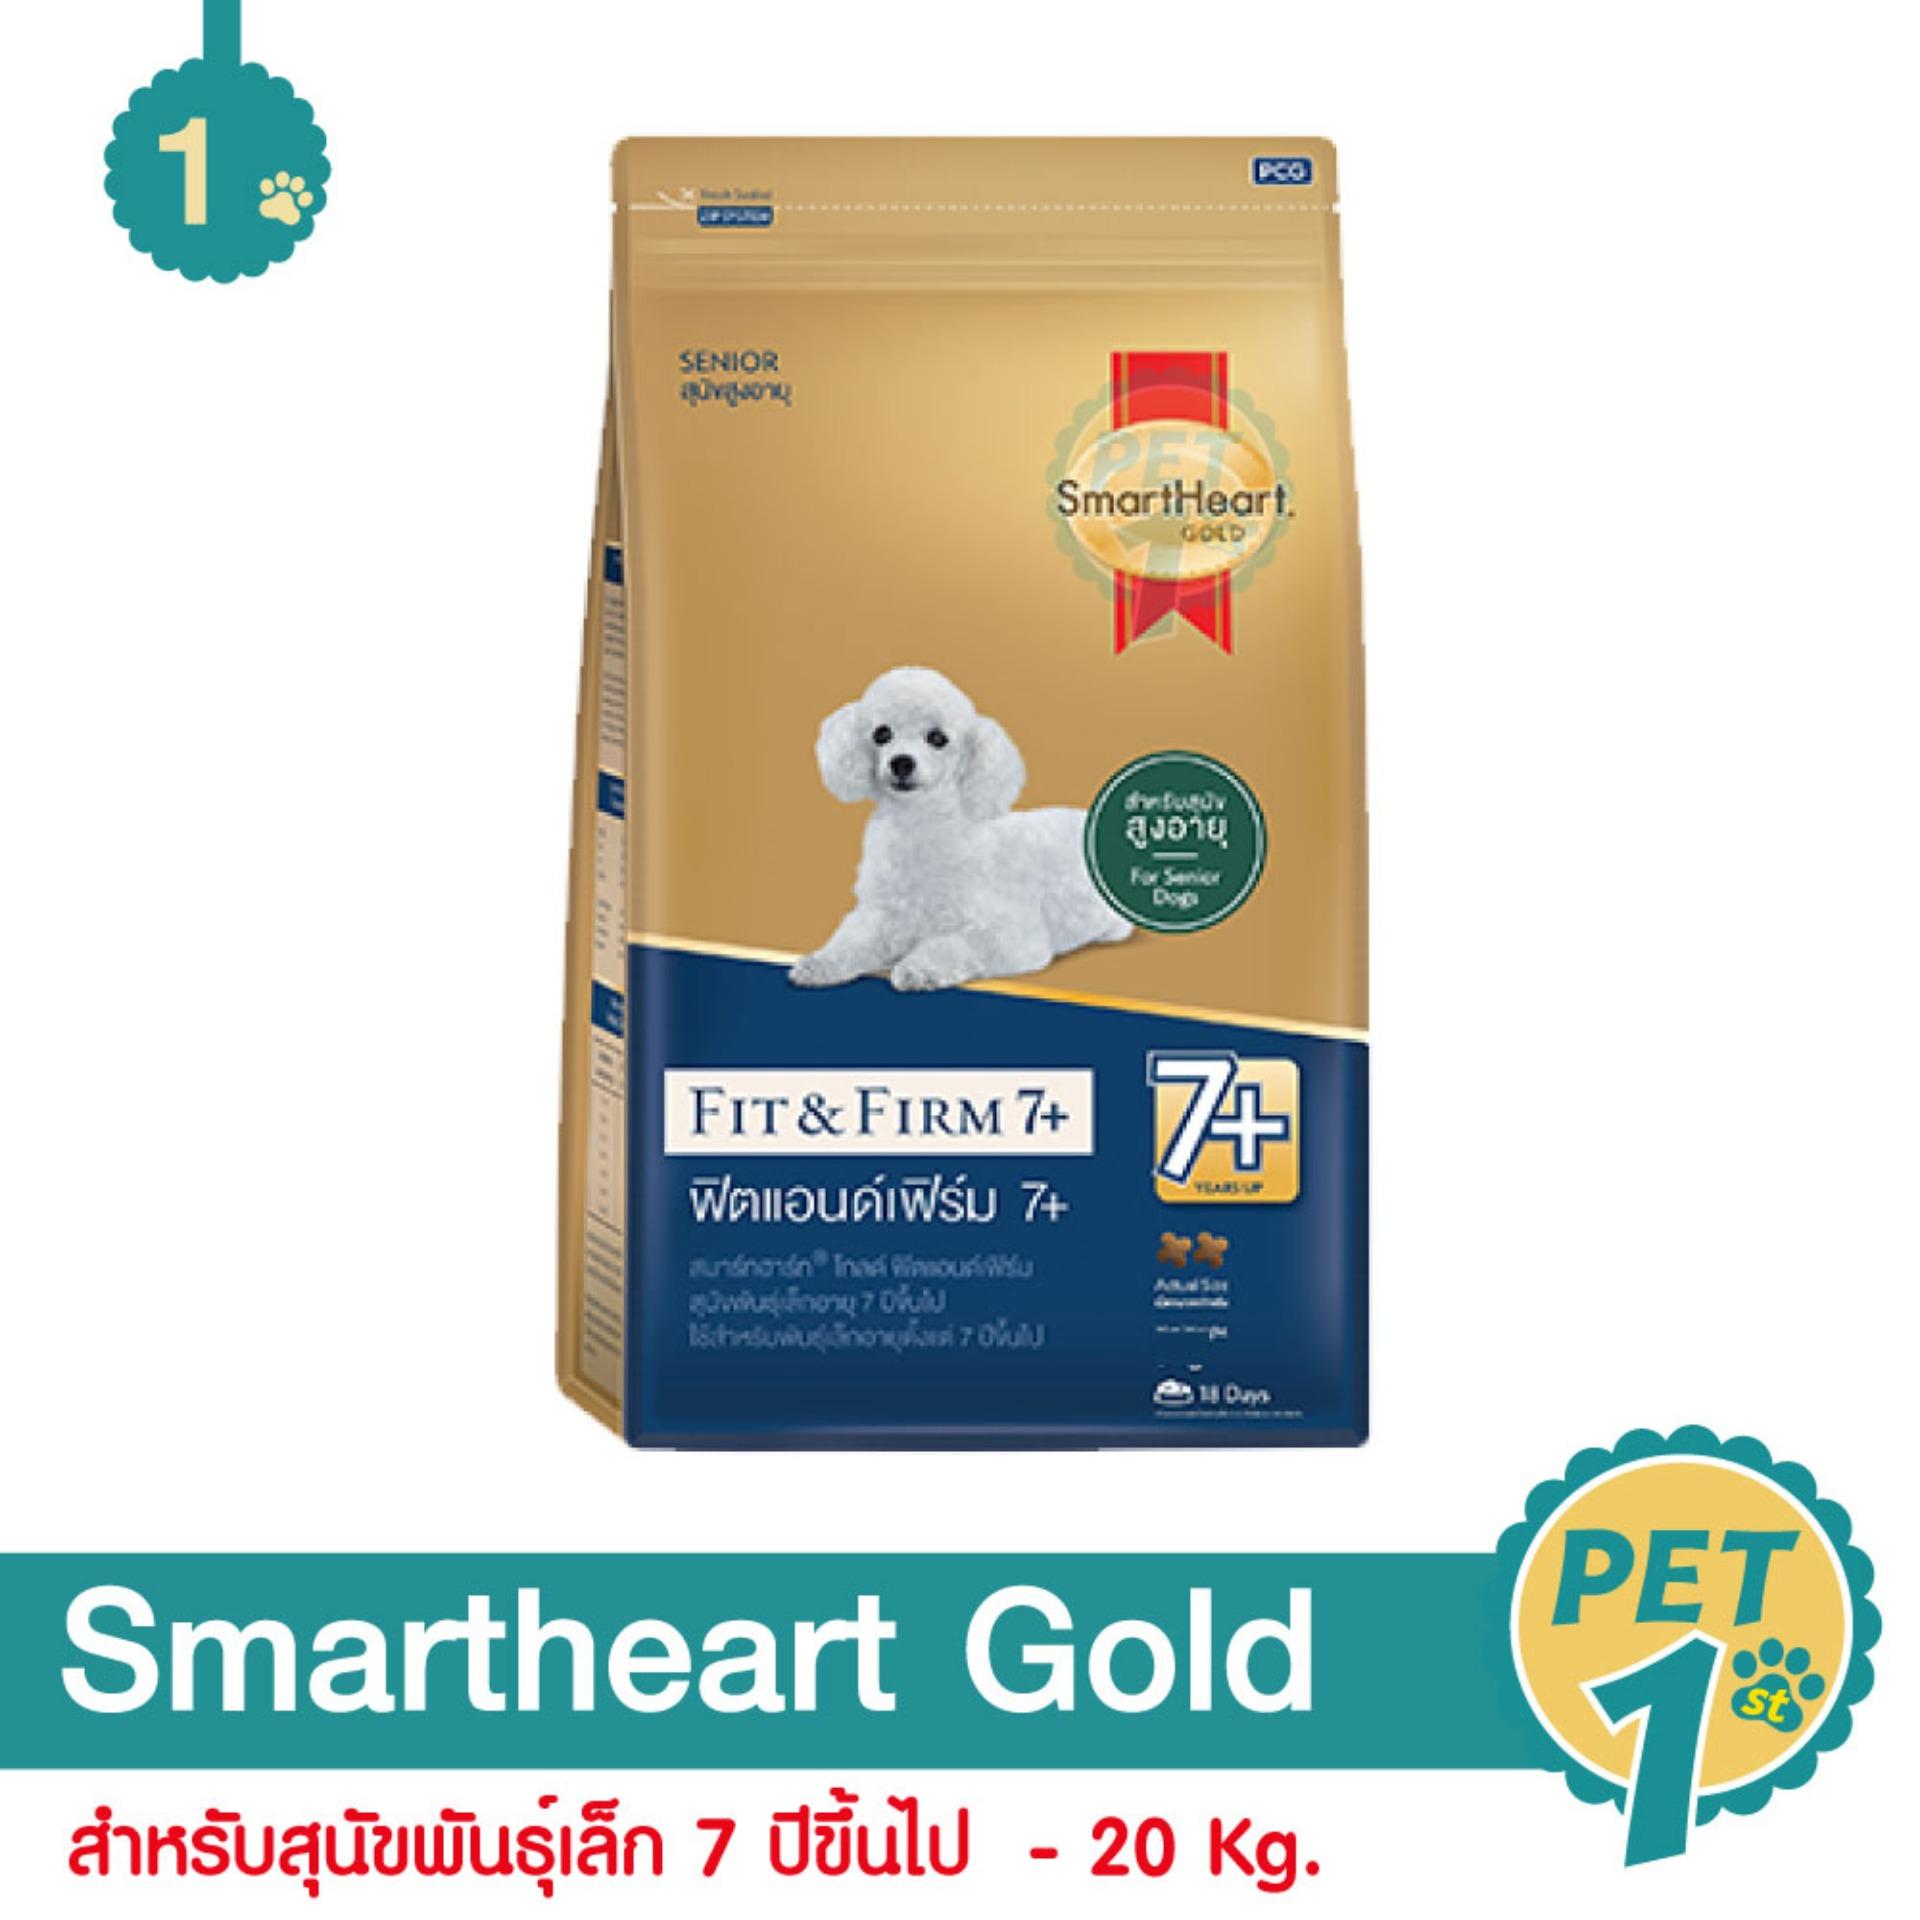 Smartheart Gold Fit and Firm สูตรบำรุงข้อต่อ ควบคุมน้ำหนัก สำหรับสุนัขพันธุ์เล็ก 7 ปีขึ้นไป 20 Kg